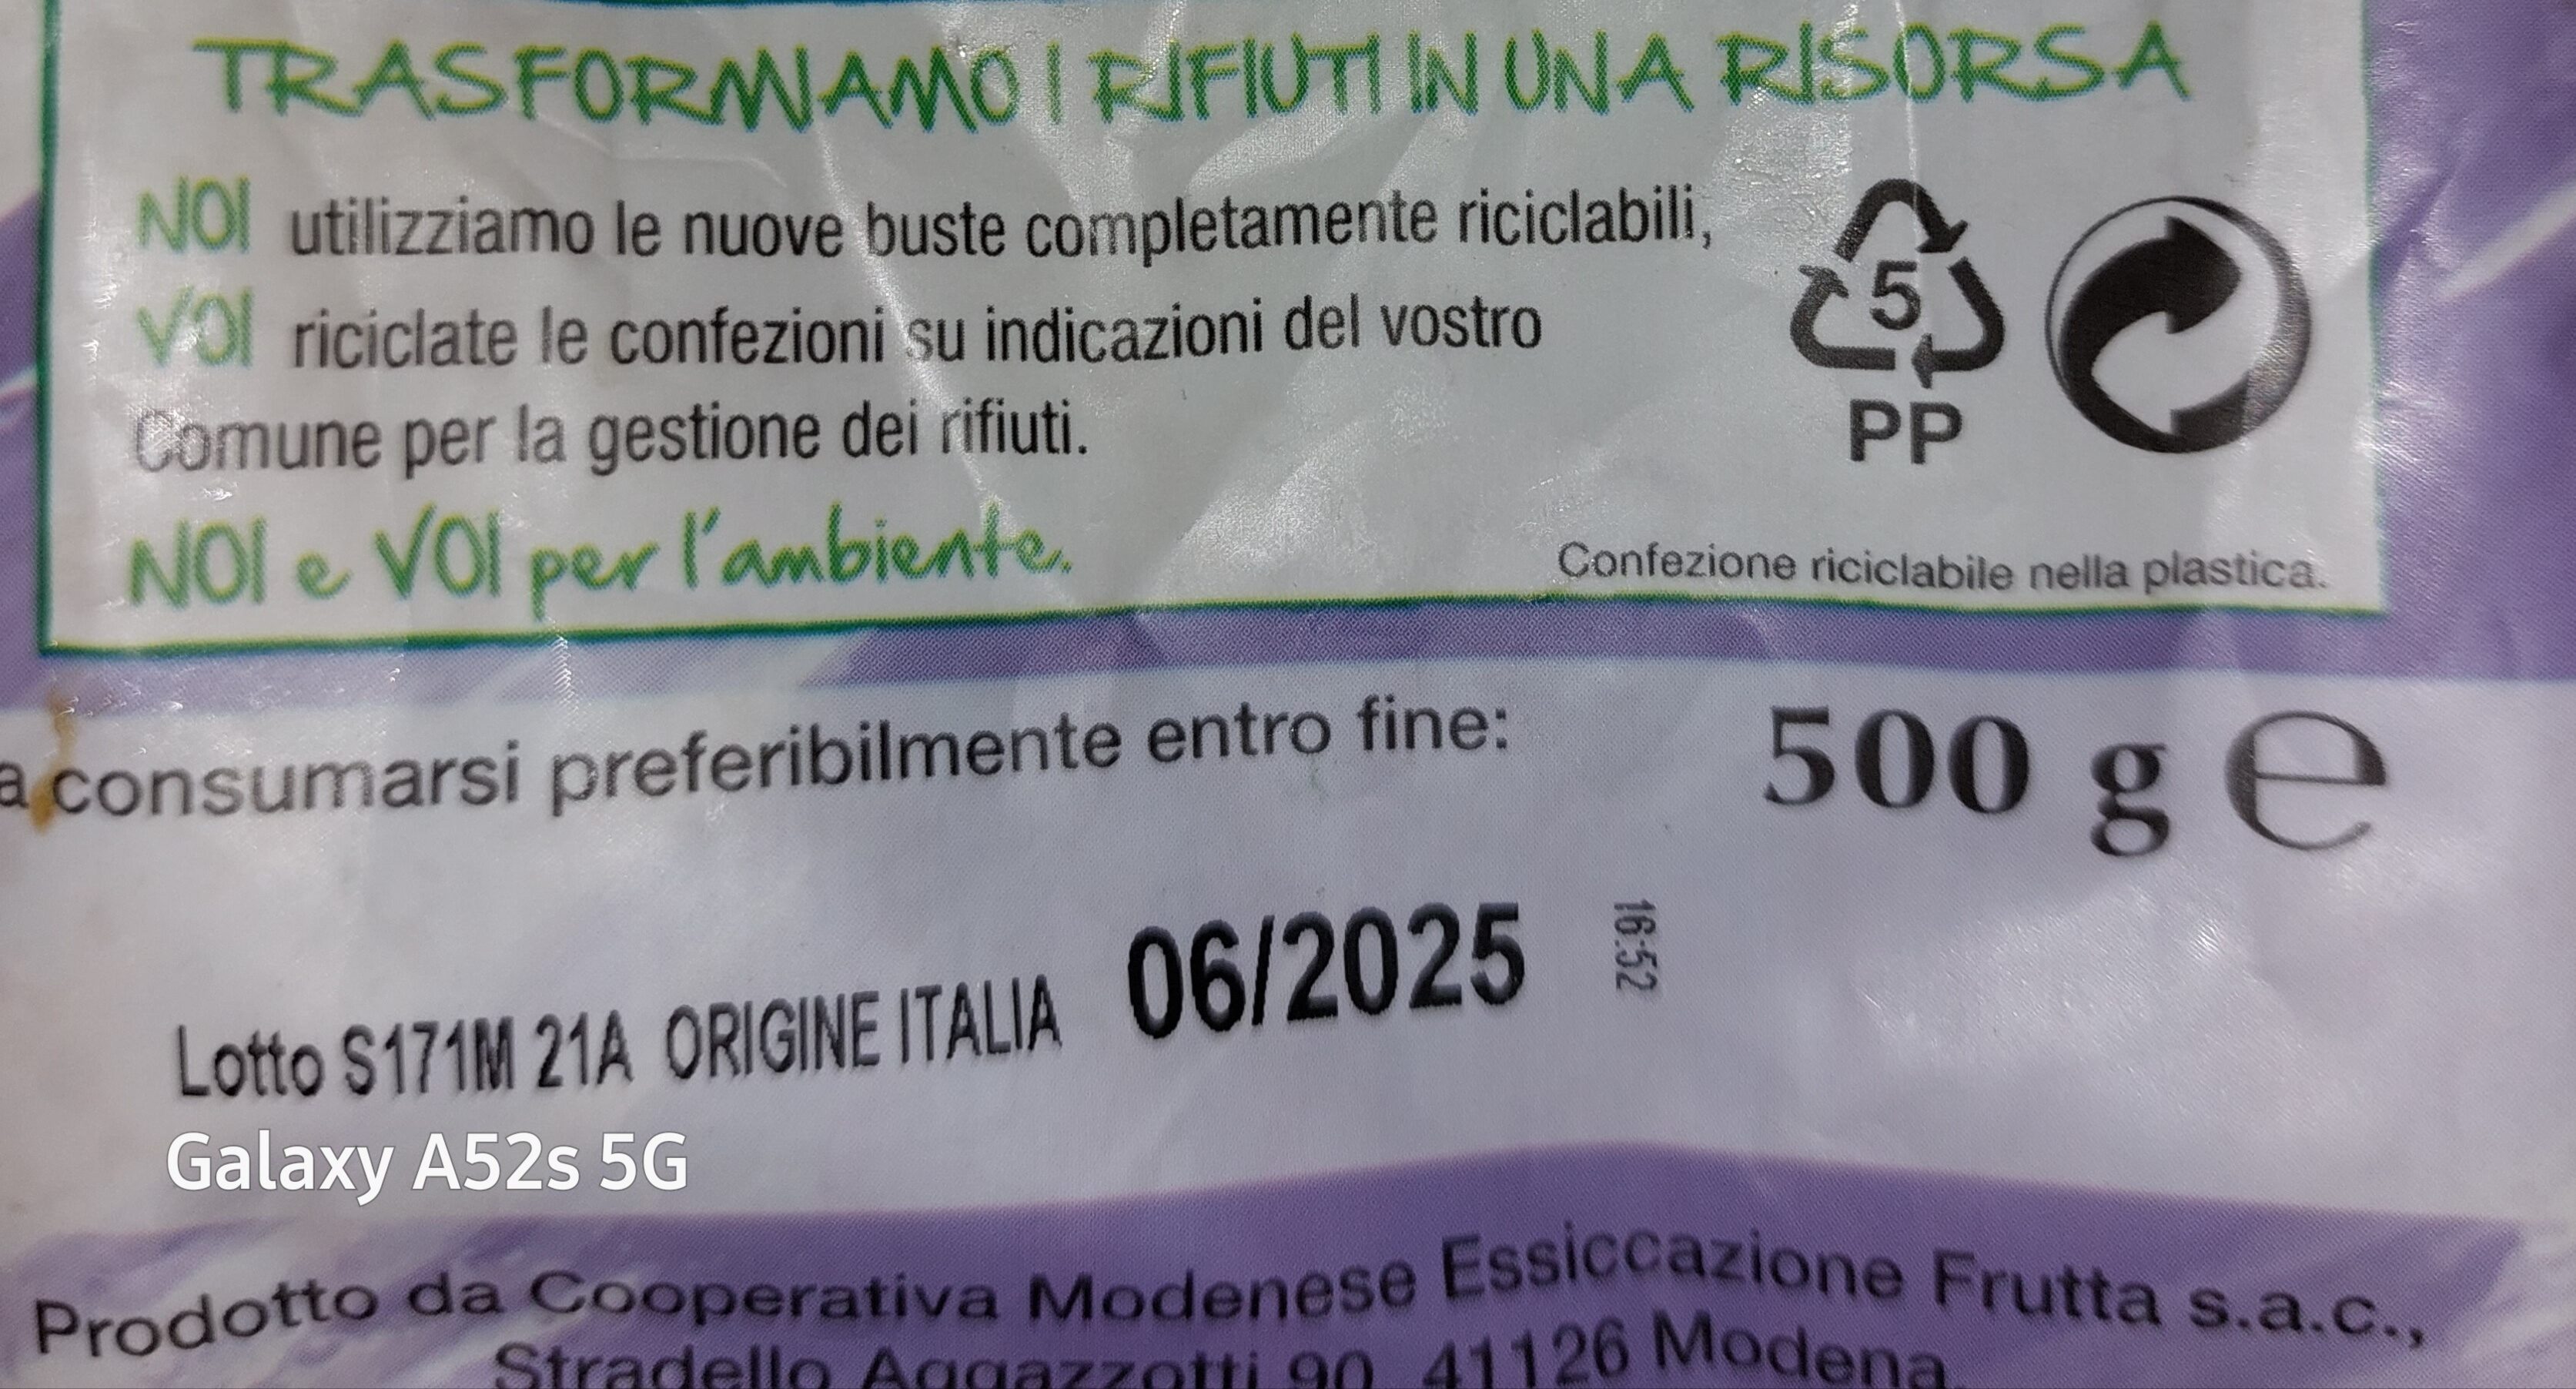 Piccole prugne italiane - Istruzioni per il riciclaggio e/o informazioni sull'imballaggio